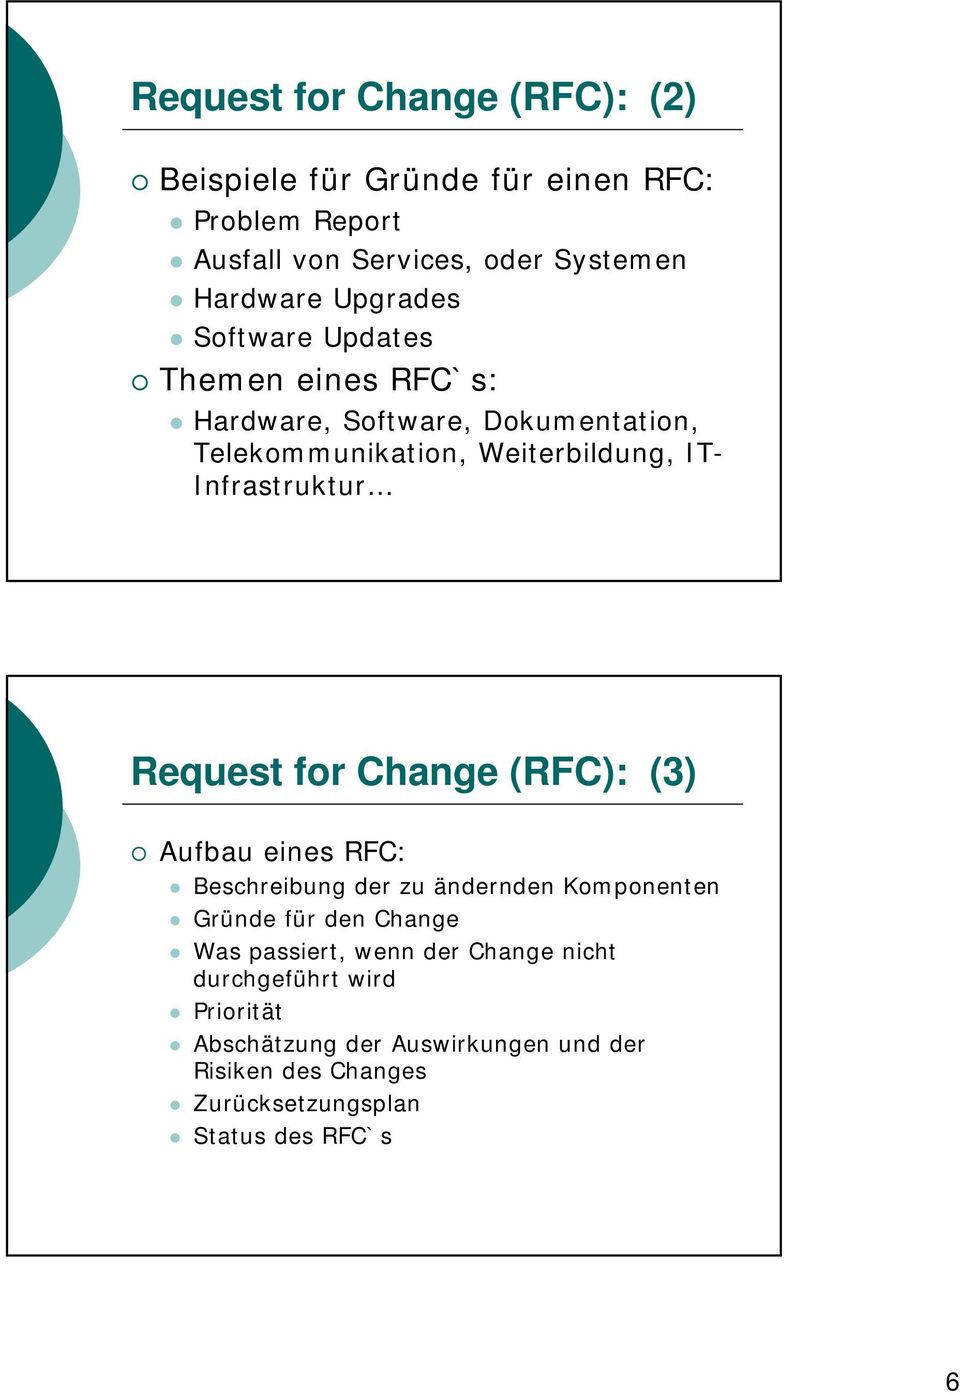 Request for Change (RFC): (3) Aufbau eines RFC: Beschreibung der zu ändernden Komponenten Gründe für den Change Was passiert, wenn